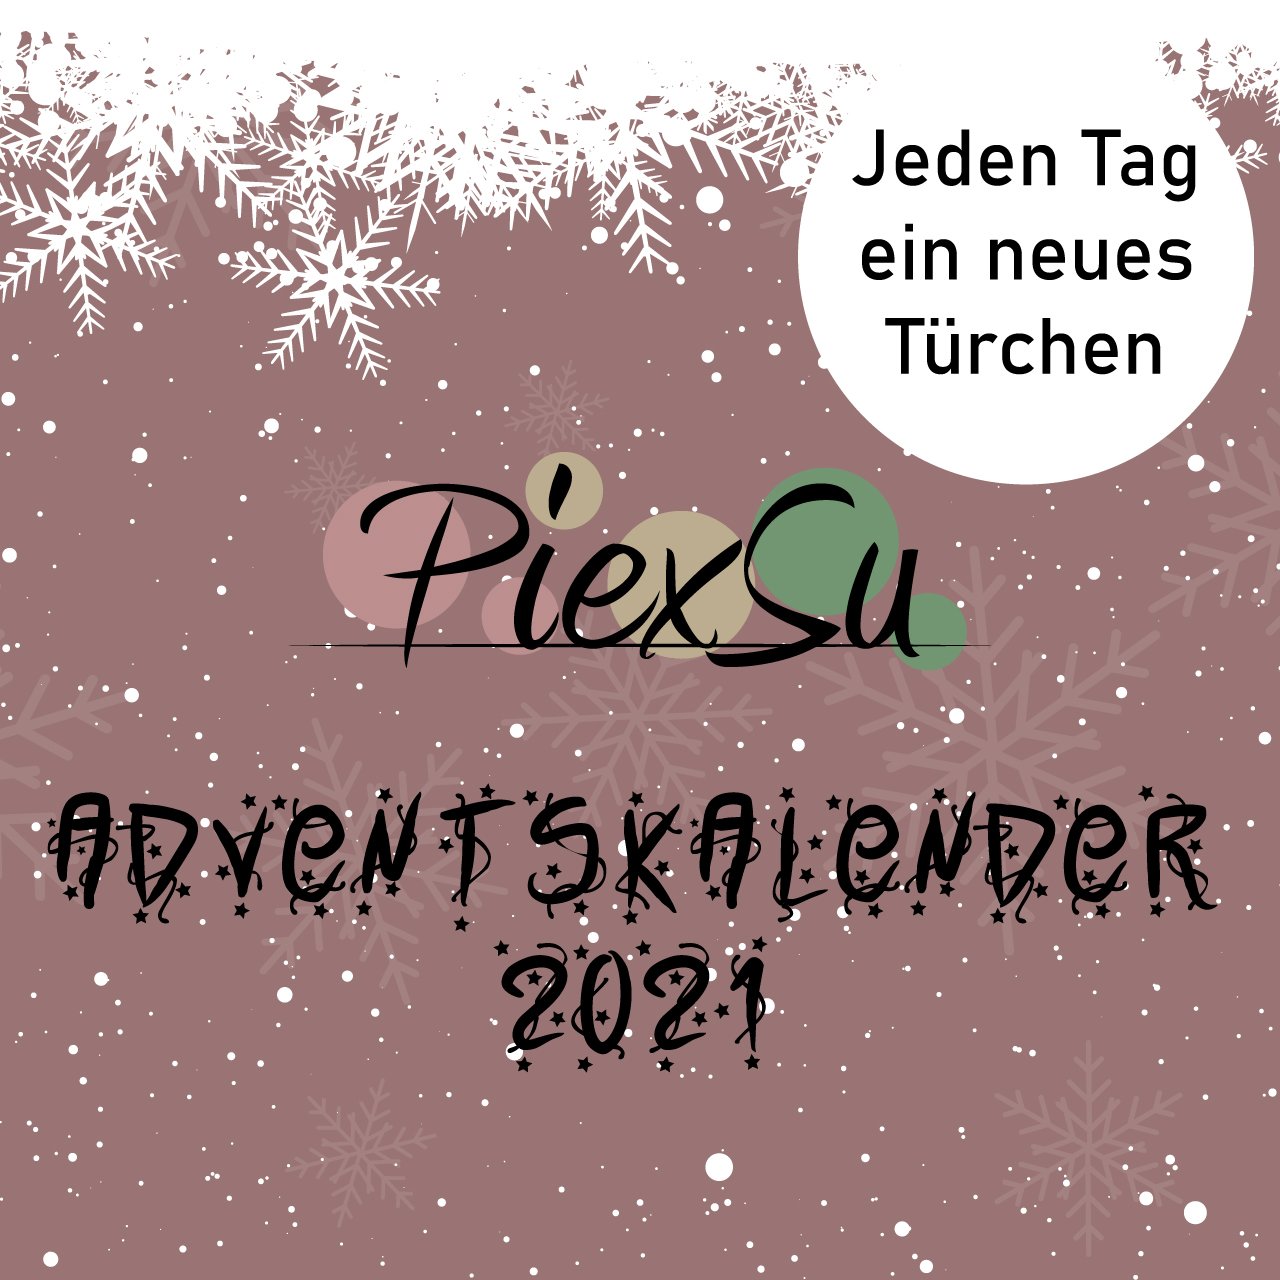 PiexSu-Adventskalender-2021-Blogbild